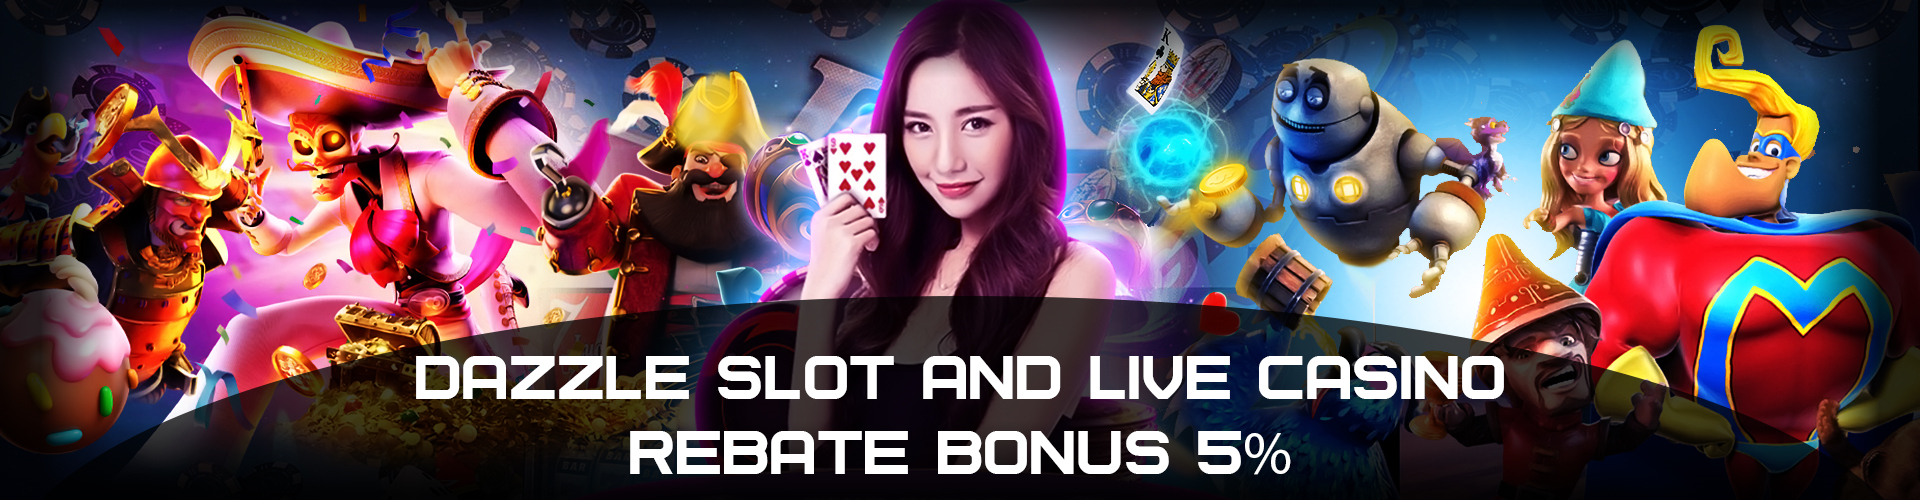 Online Casino Malaysia Dazzle Rebate Bonus 8%